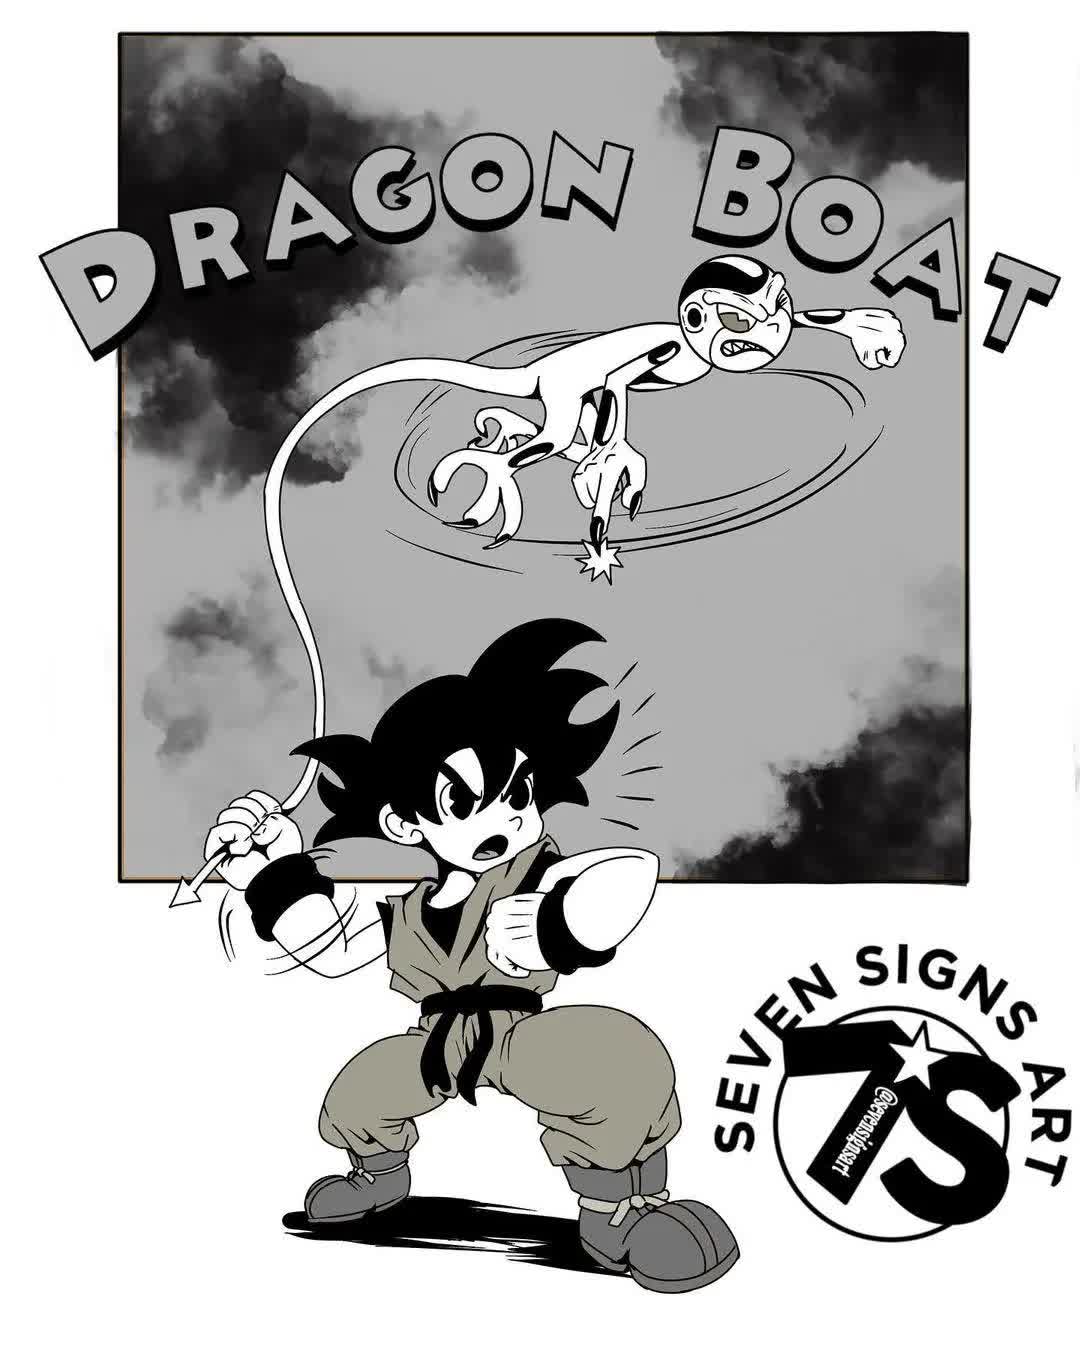  Goku trong Dragon Ball luôn là nguồn cảm hứng sáng tạo thú vị cho nhiều nghệ sĩ Goku-5-1683887840233-1683887841269959990538-1684118756712-1684118756769249287829-1684124255323-1684124255437621772532